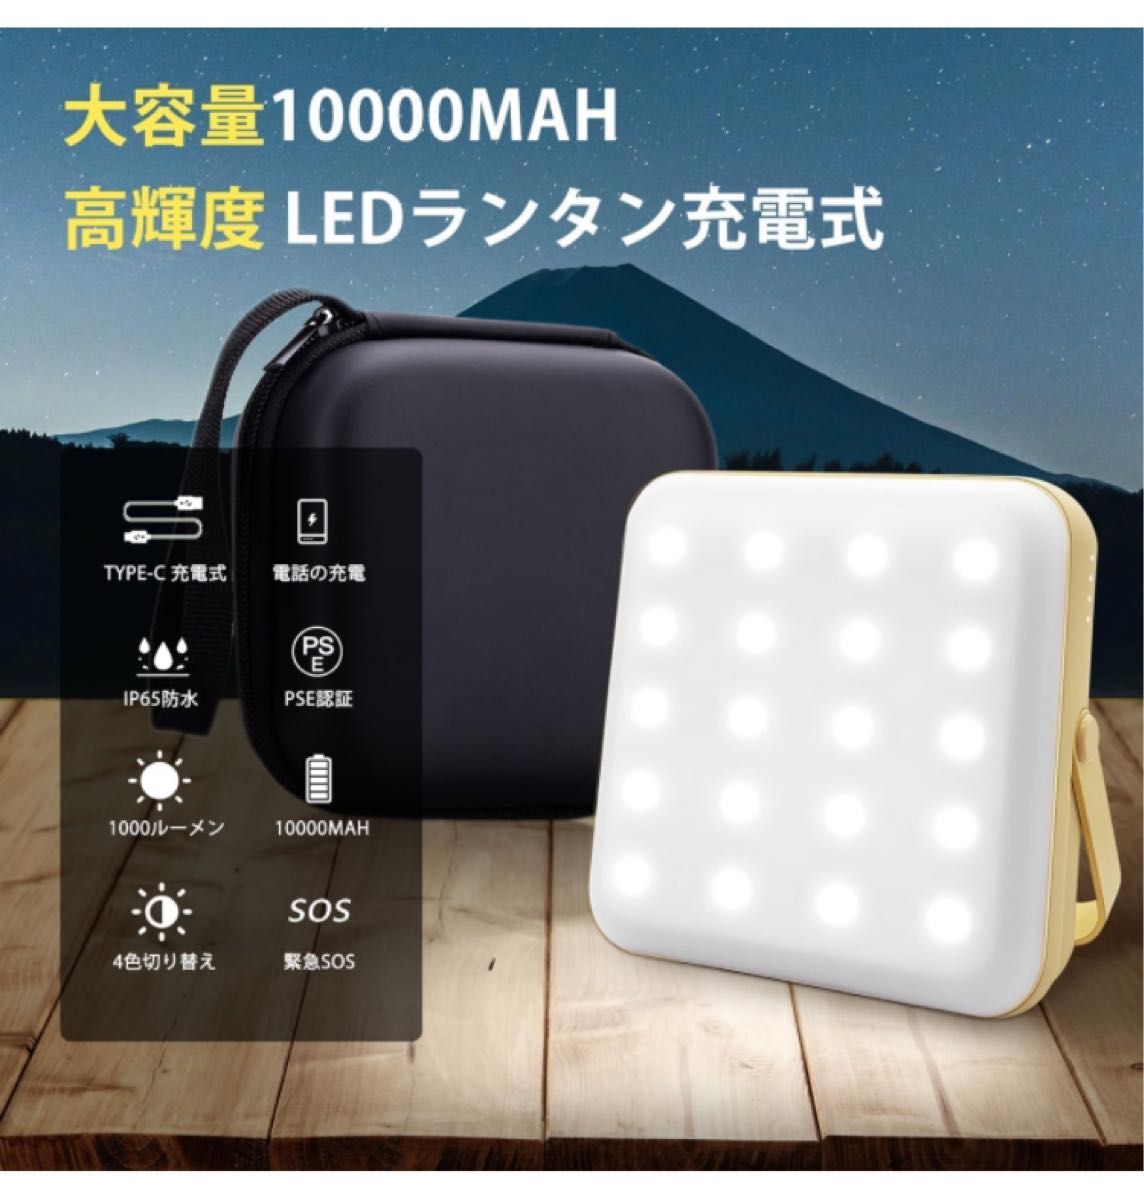 【 10000mAh led ランタン 収納ボックス付き】 FEZOOM キャンプライト 1000ルーメン Type-c 充電式 